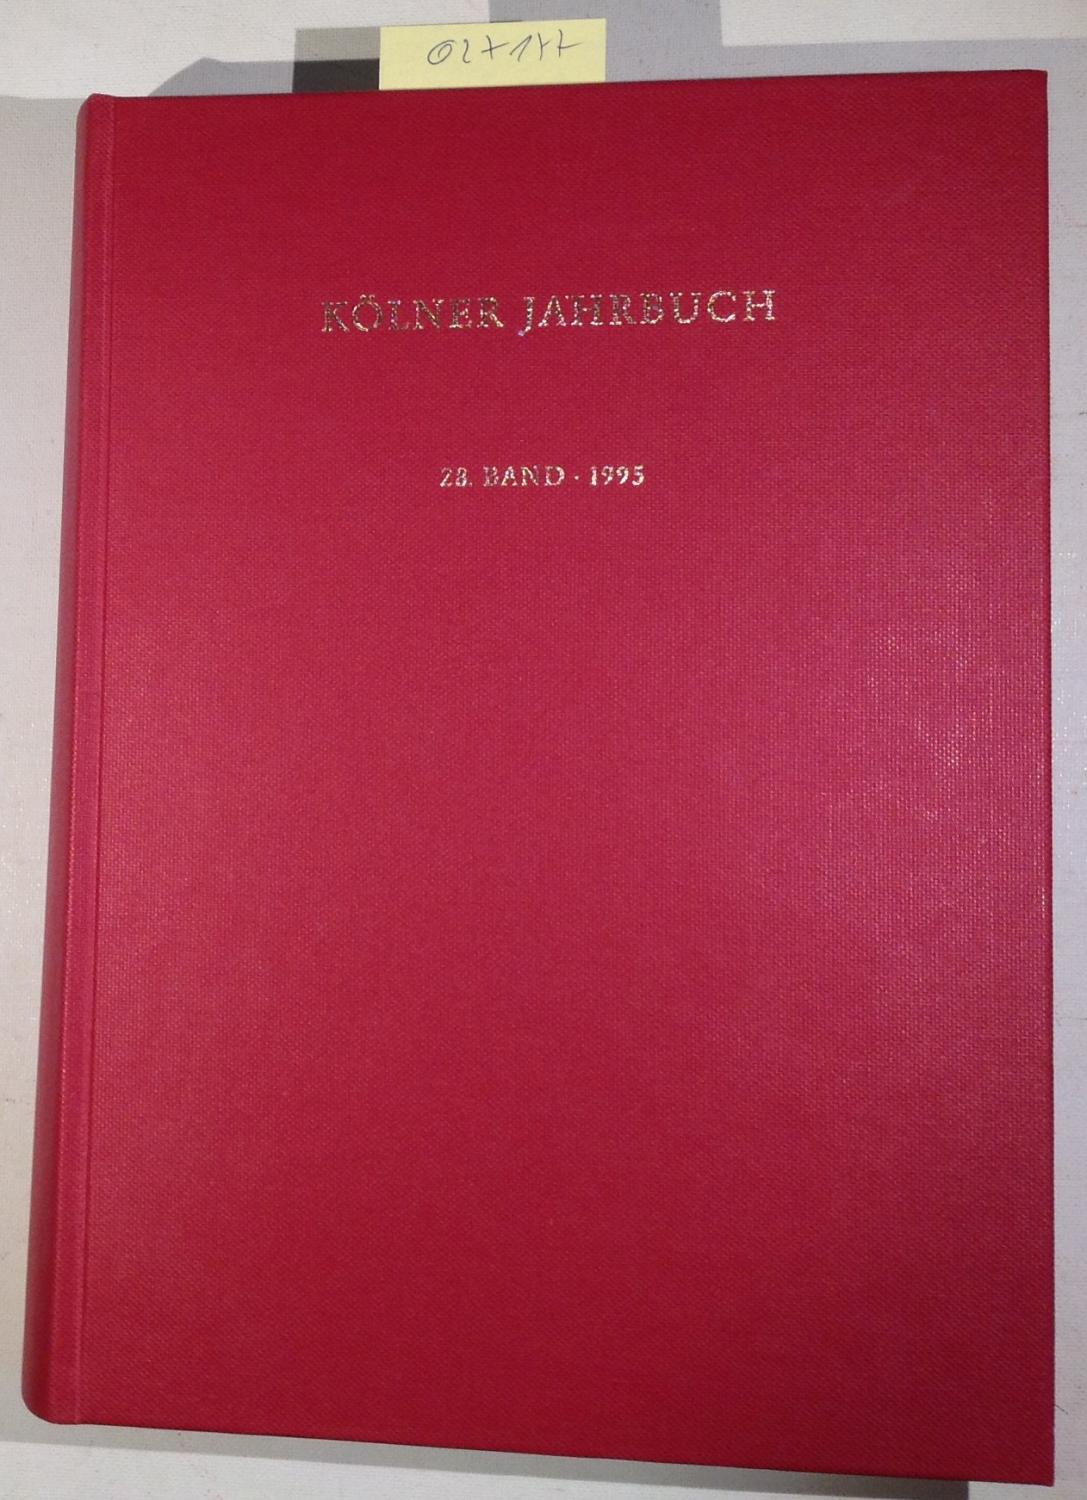 Kölner Jahrbuch für Vorgeschichte und Frühgeschichte, Bd.28, 1995 (Kölner Jahrbuch für Vor- und Frühgeschichte)